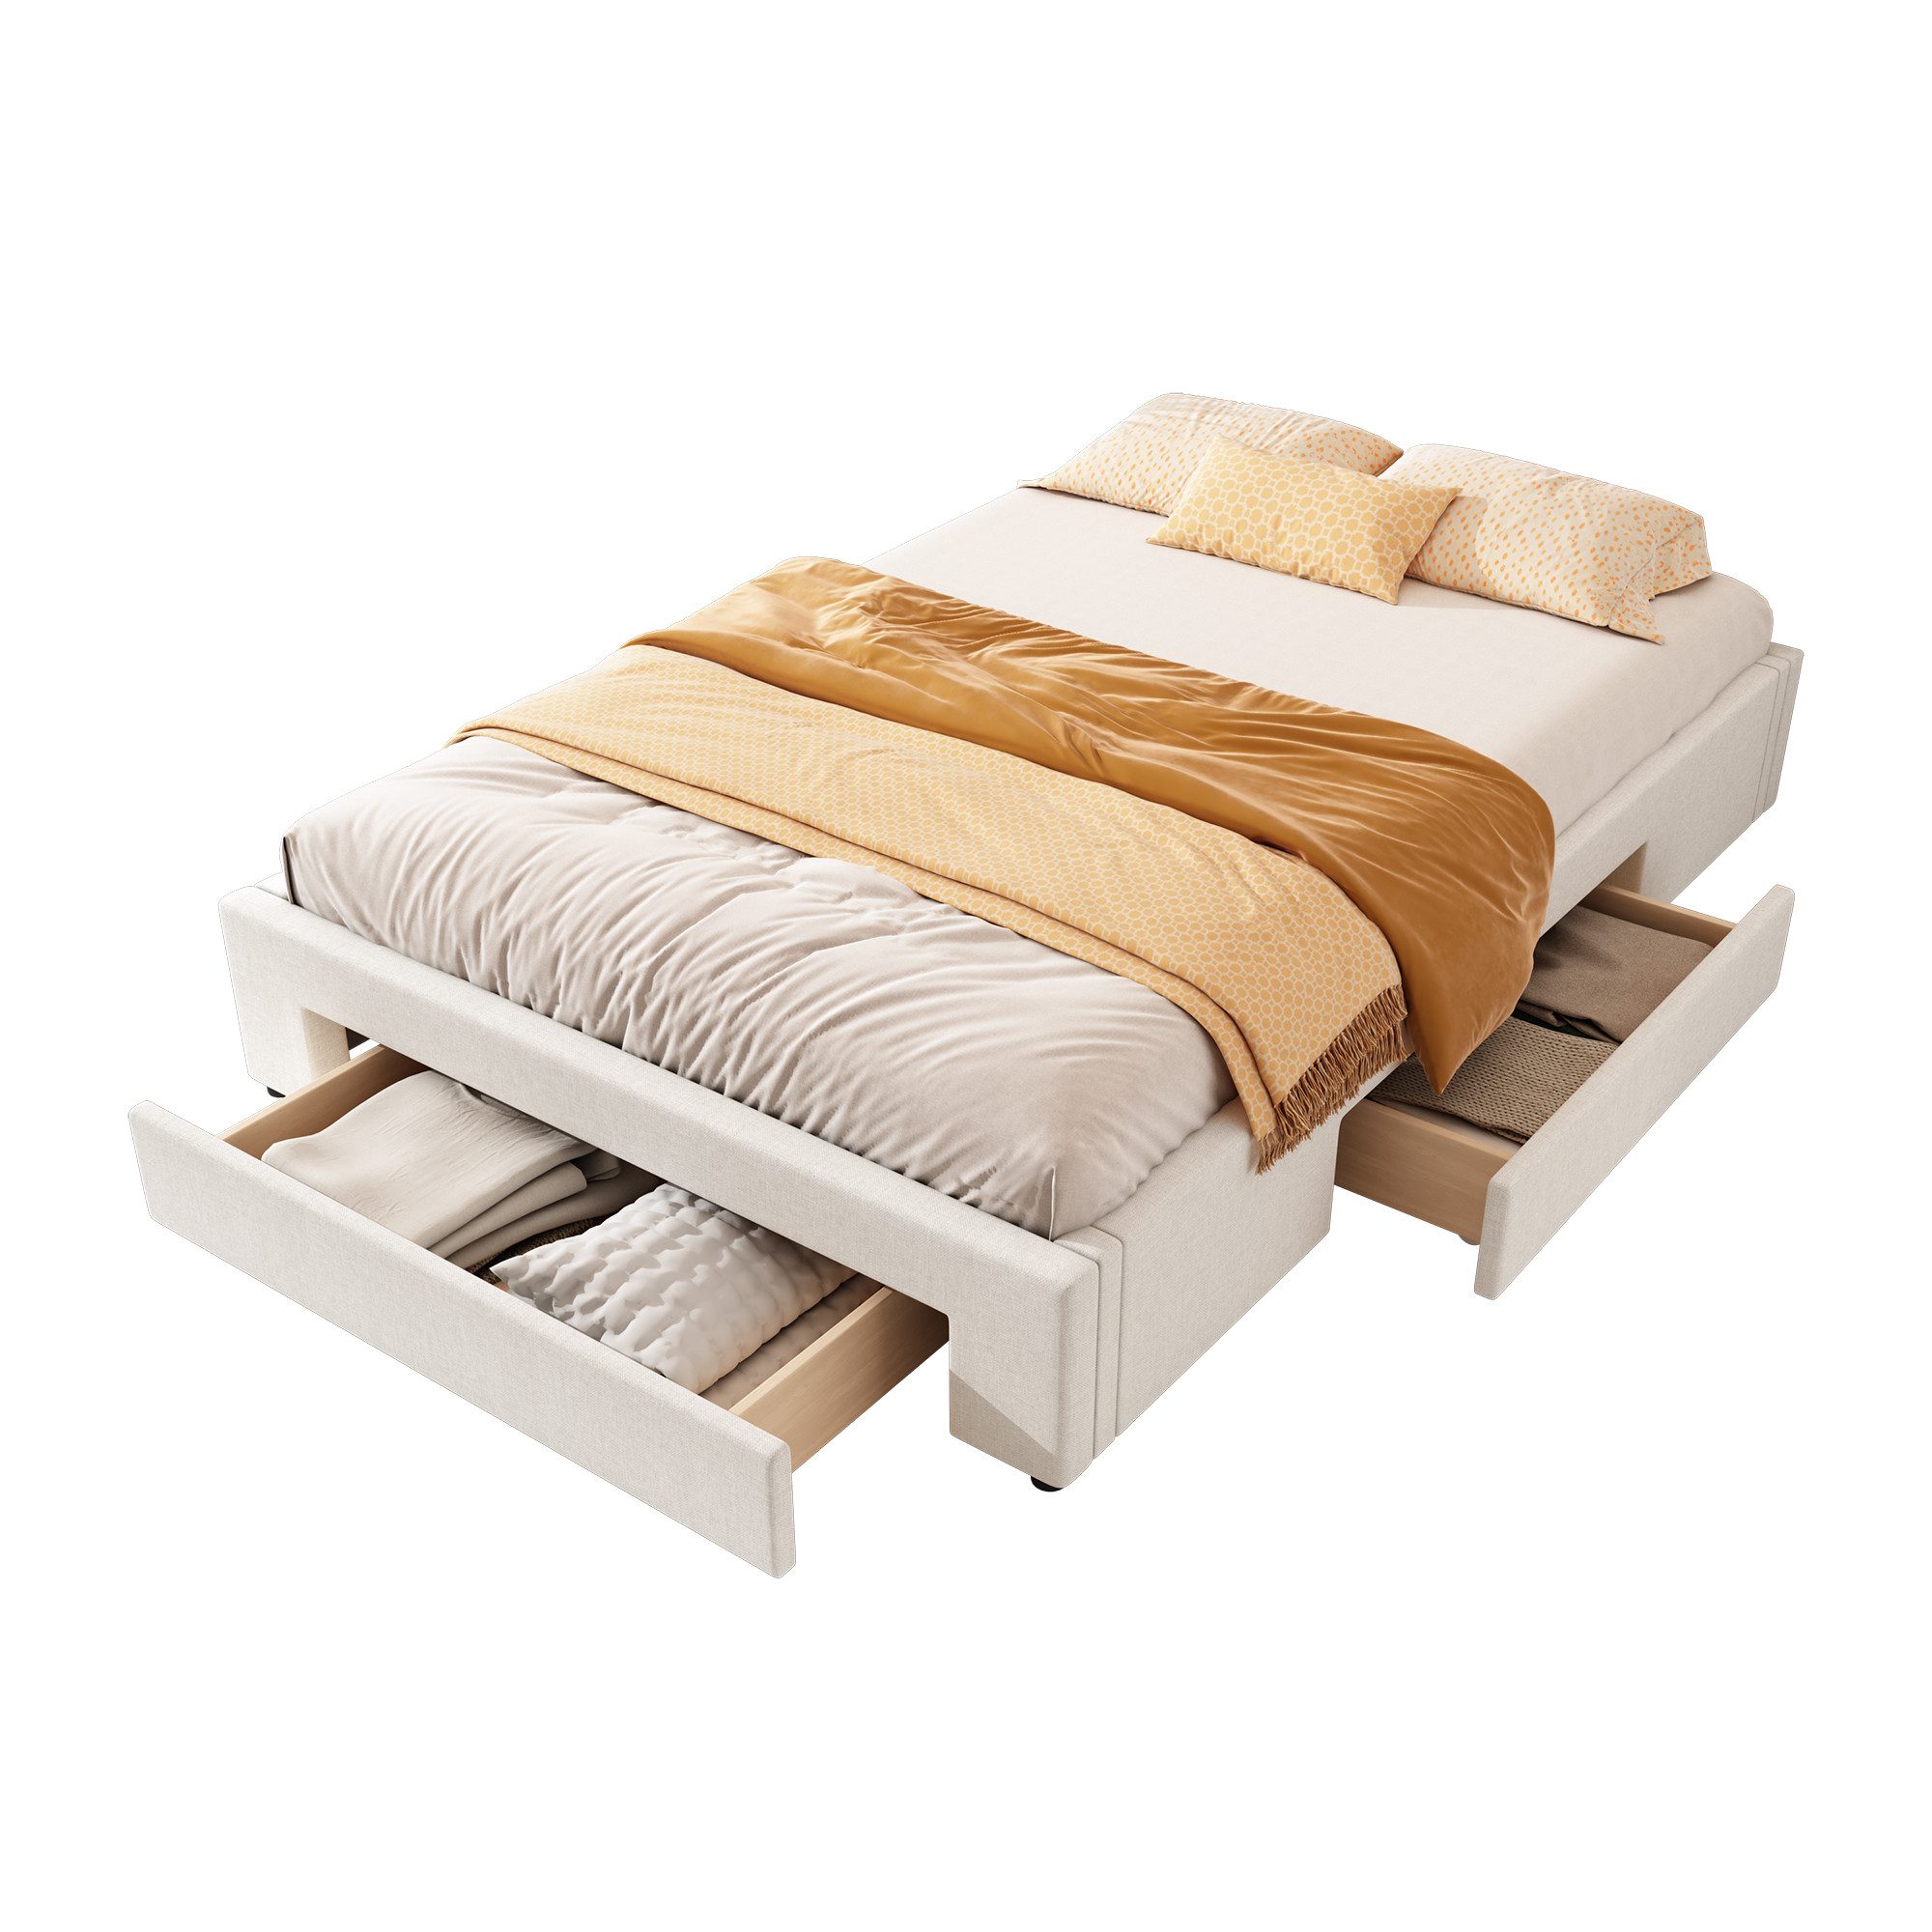 EXTSUD Polsterbett Flachbett, drei Ablagefächer, ohne Kopfteil, Bett,erhältlich in 2 Größen und 2 Farben, ohne Kopfteil